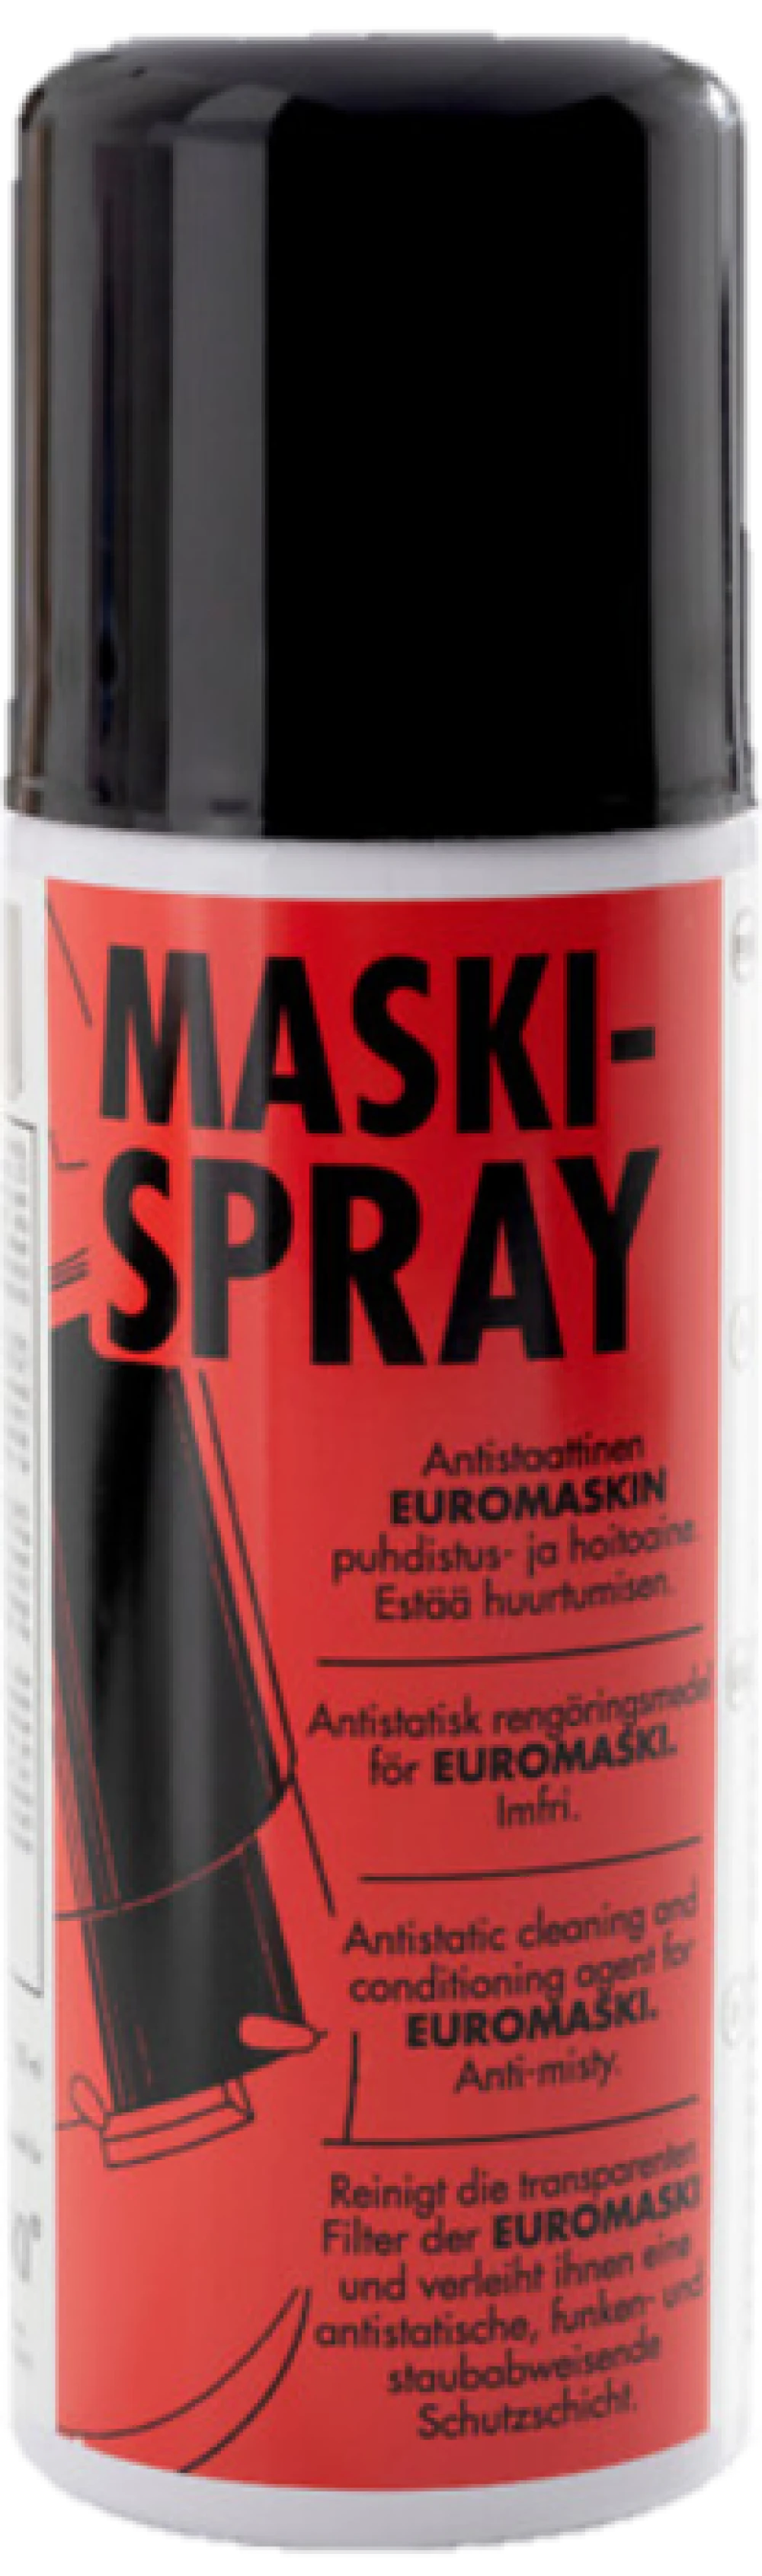 Mask Spray visor cleaner